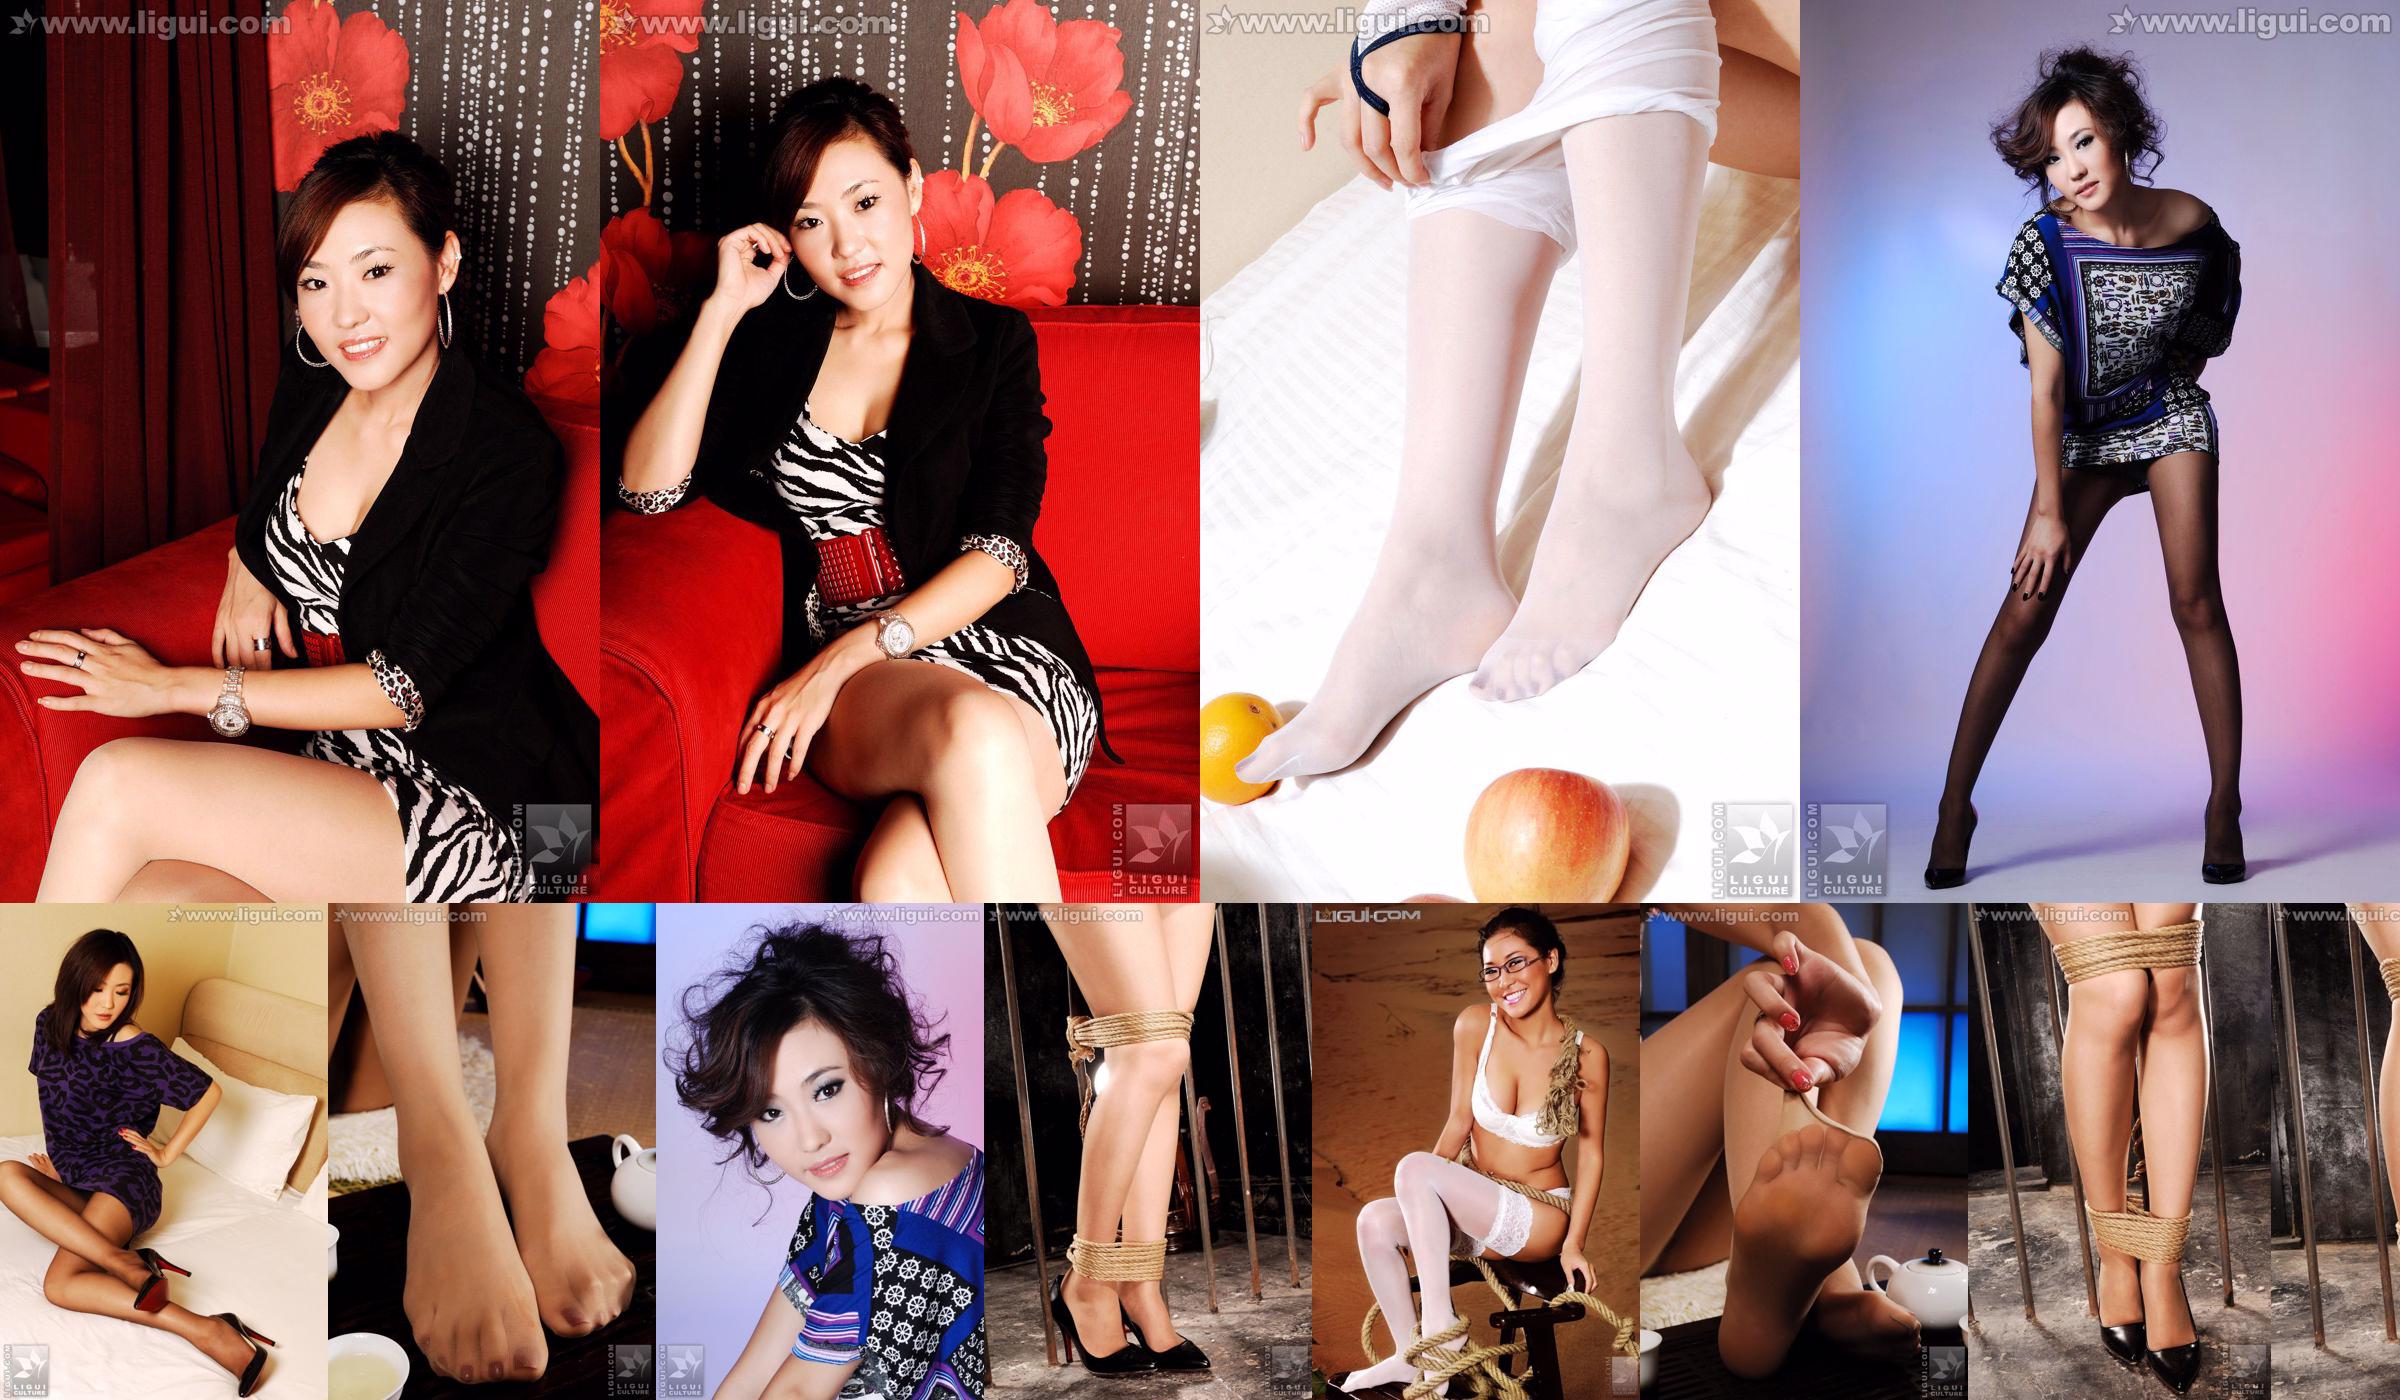 Модель CoCo "Очарование на высоком каблуке под профессиональной одеждой" [丽 柜 LiGui] Фотография красивых ног и нефритовых ступней. No.0e6714 Страница 1